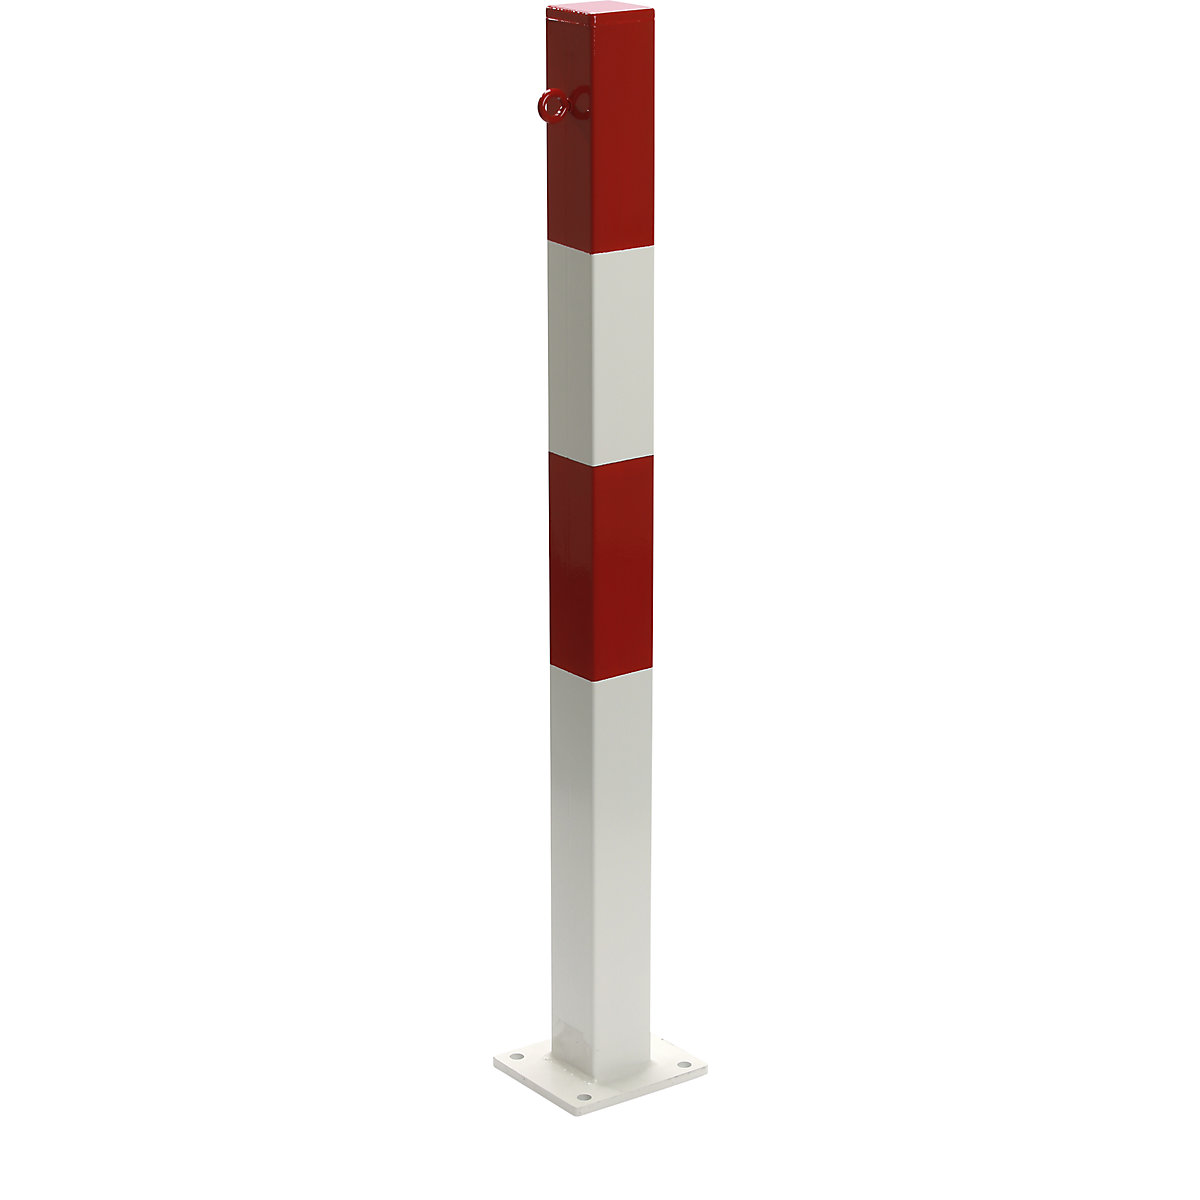 Zahradzovací stĺpik, na pripevnenie hmoždinkami, 70 x 70 mm, červeno-bielo lakované, 1 oko-12